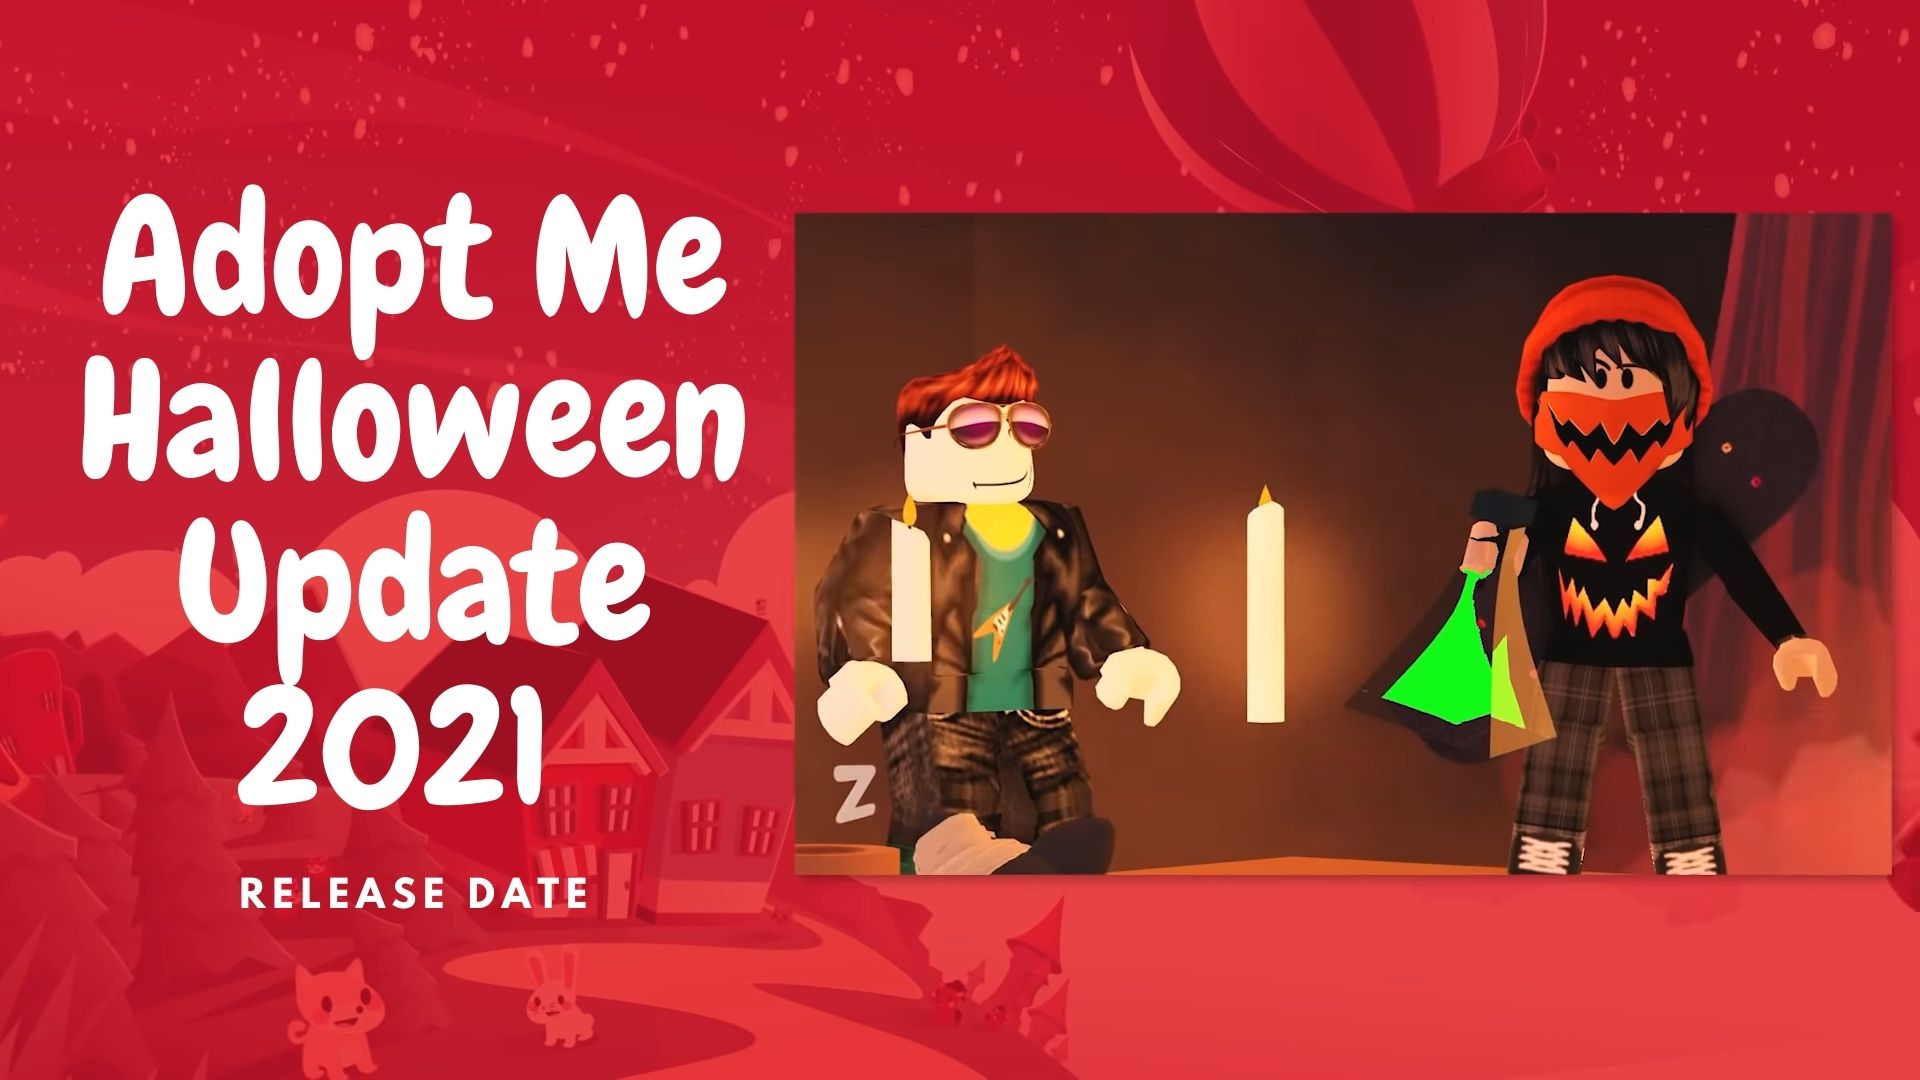 2021 halloween date